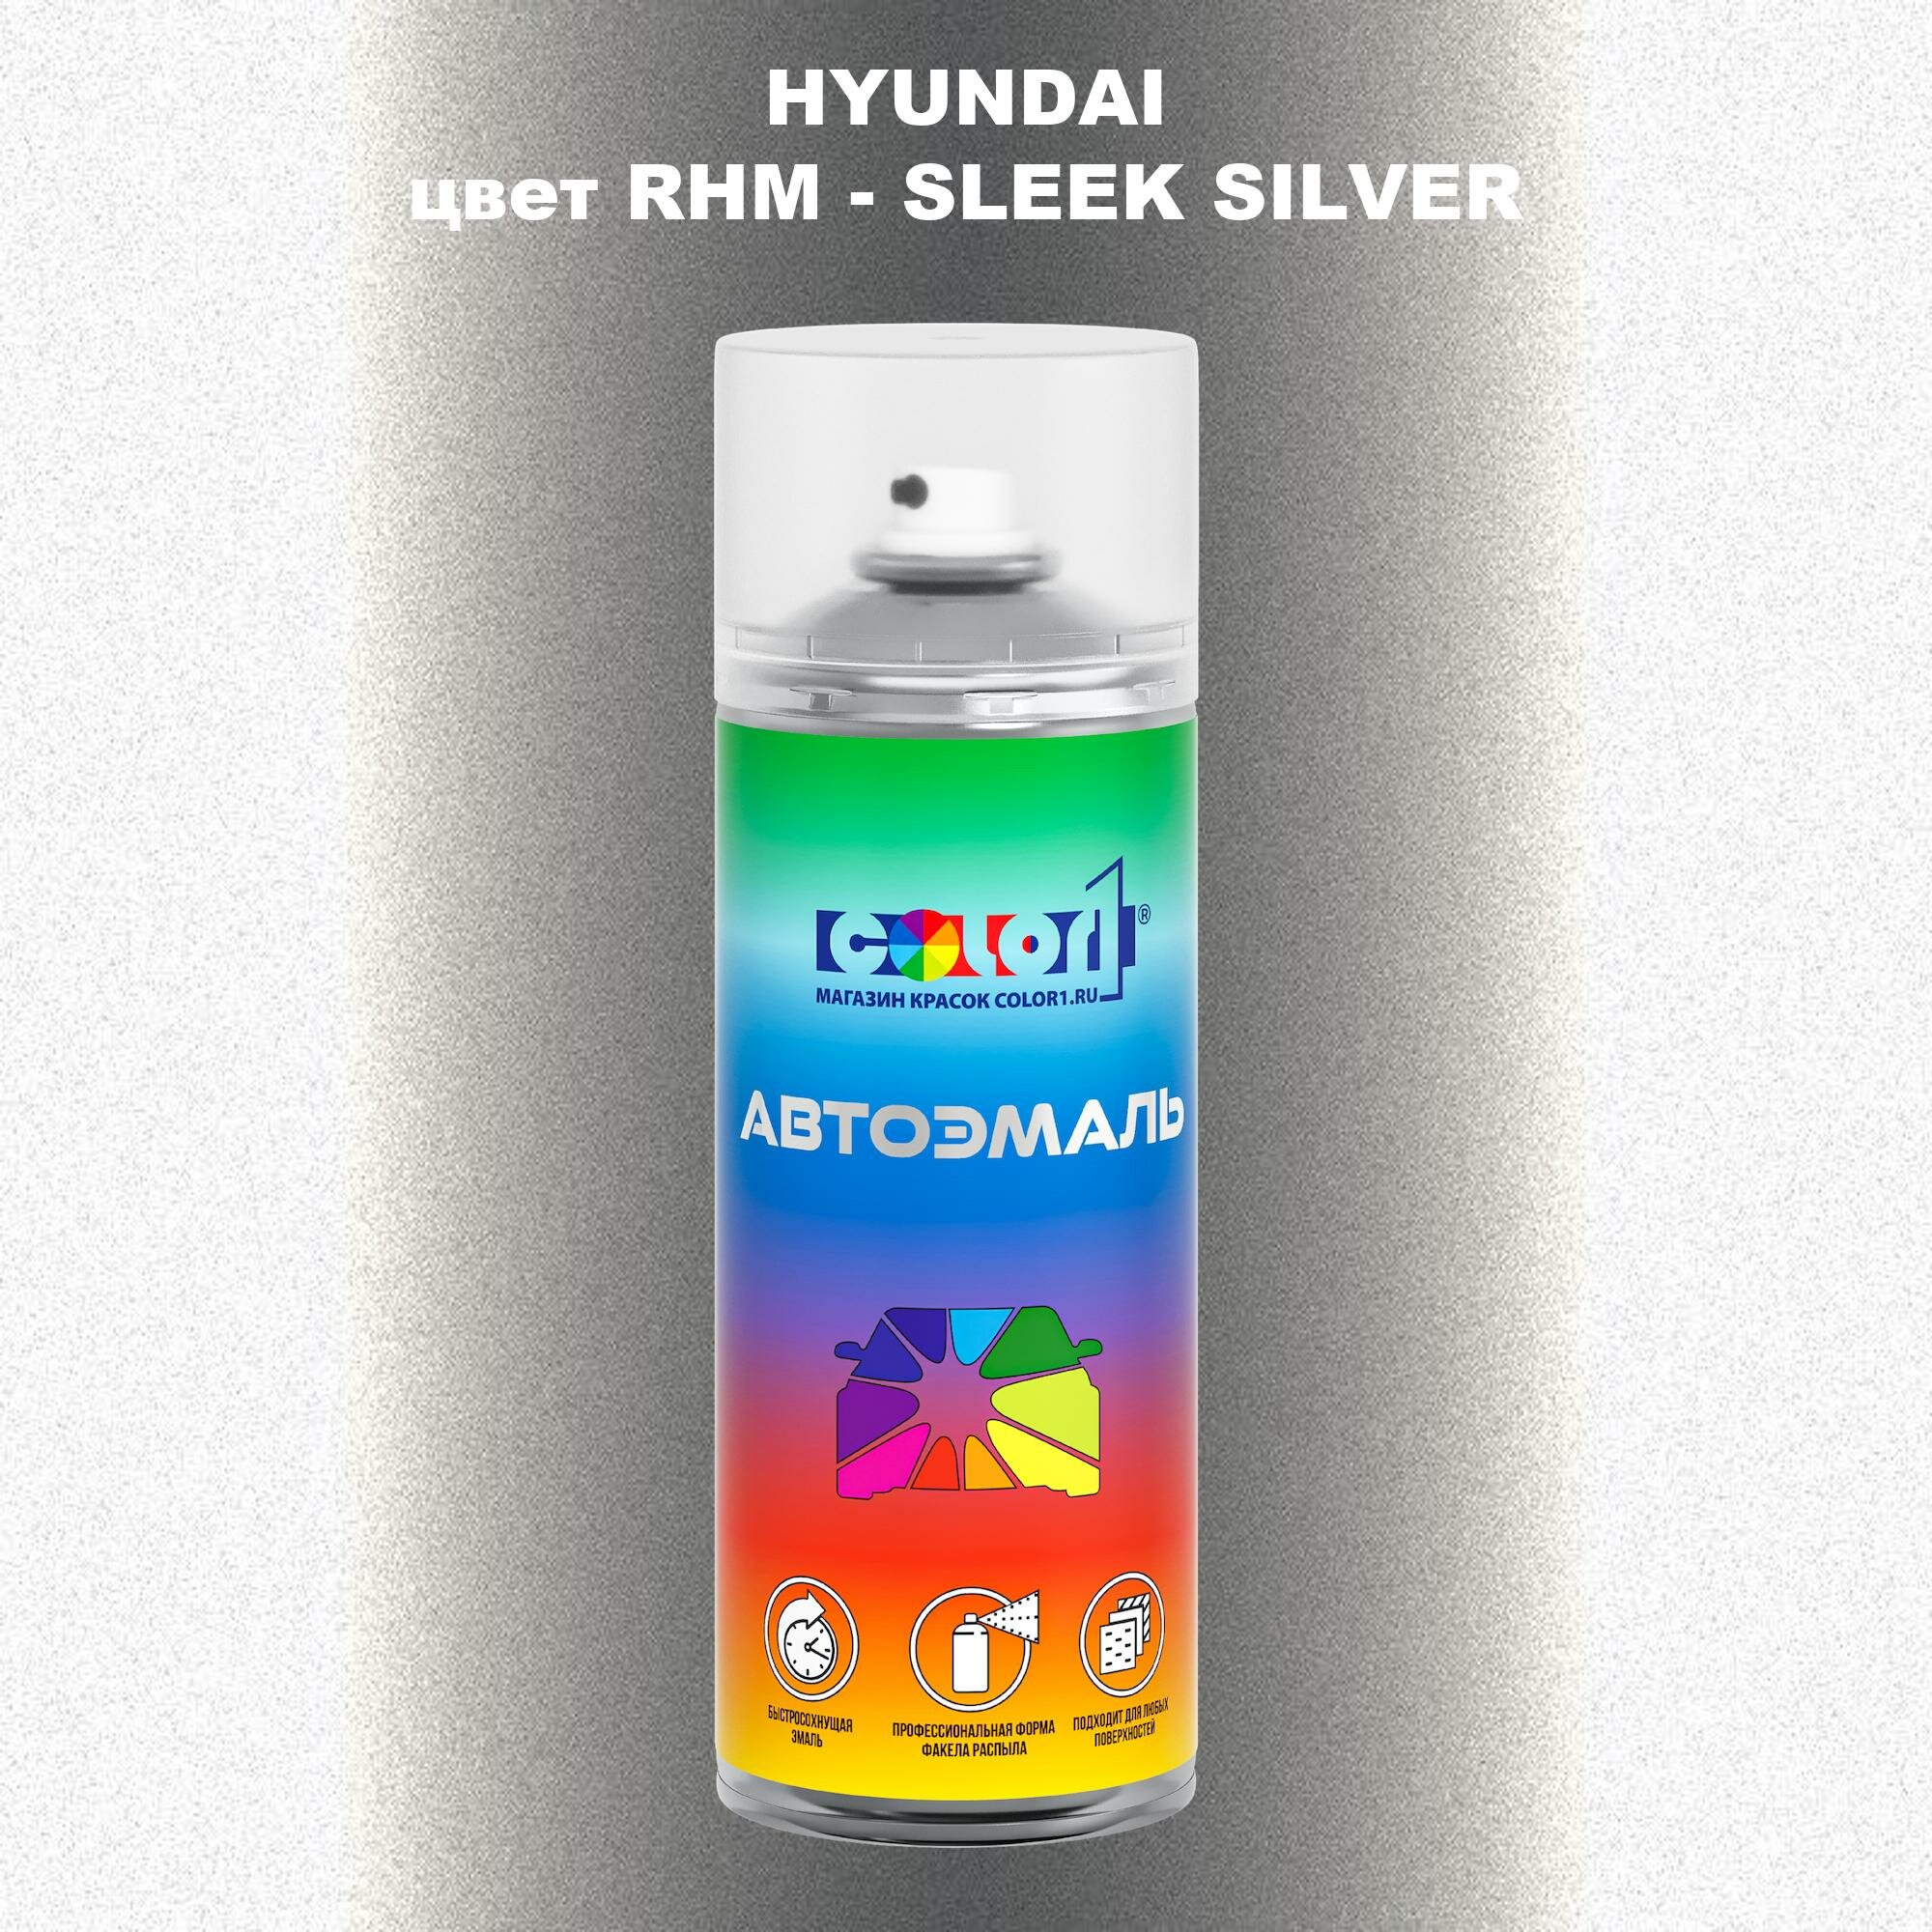 Аэрозольная краска COLOR1 для HYUNDAI, цвет RHM - SLEEK SILVER